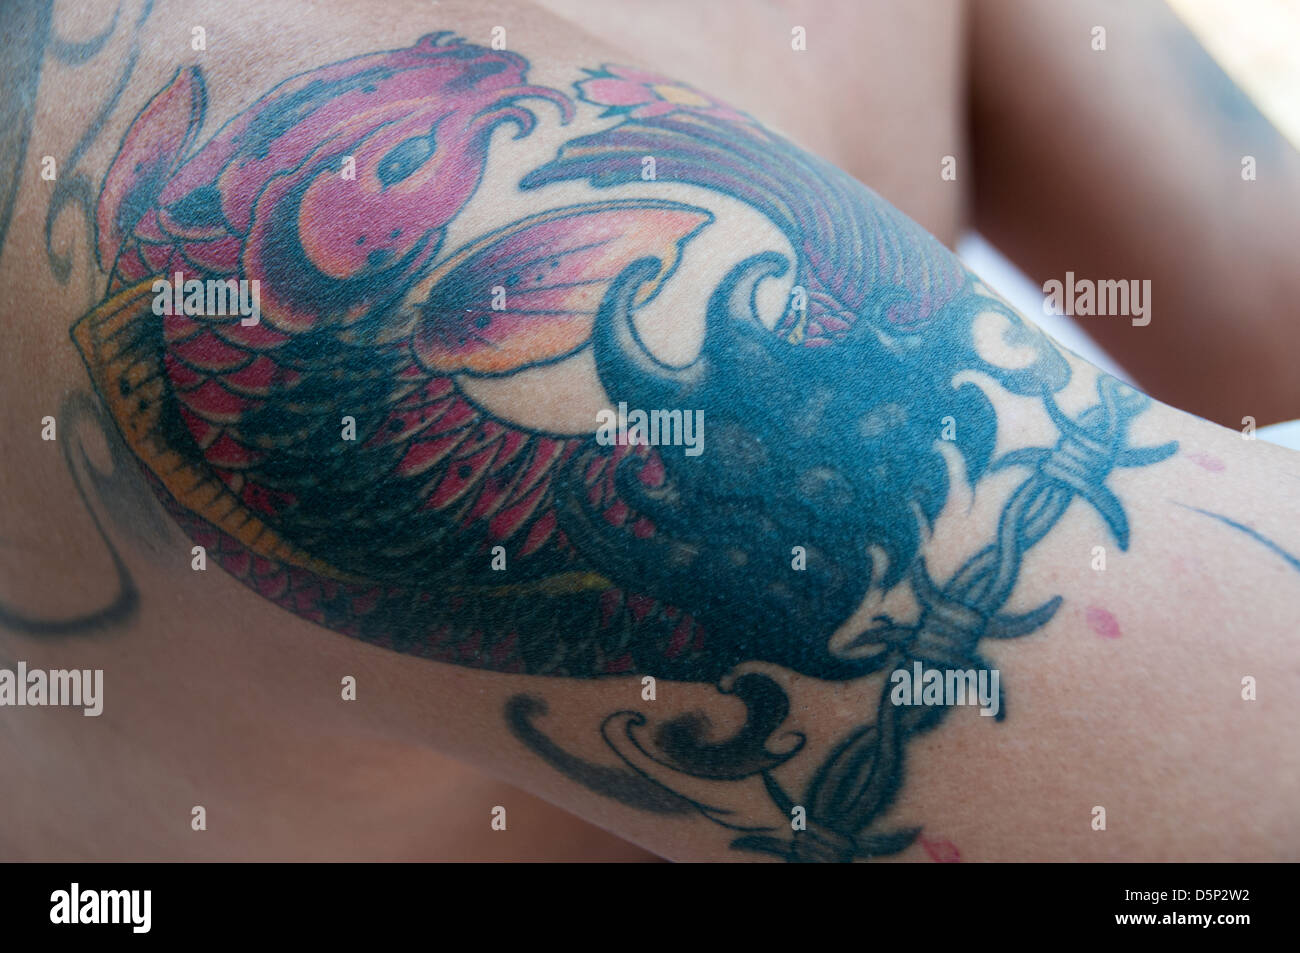 Tatuaje en el brazo tatuajes tatuados fotografías e imágenes de alta resolución - Alamy